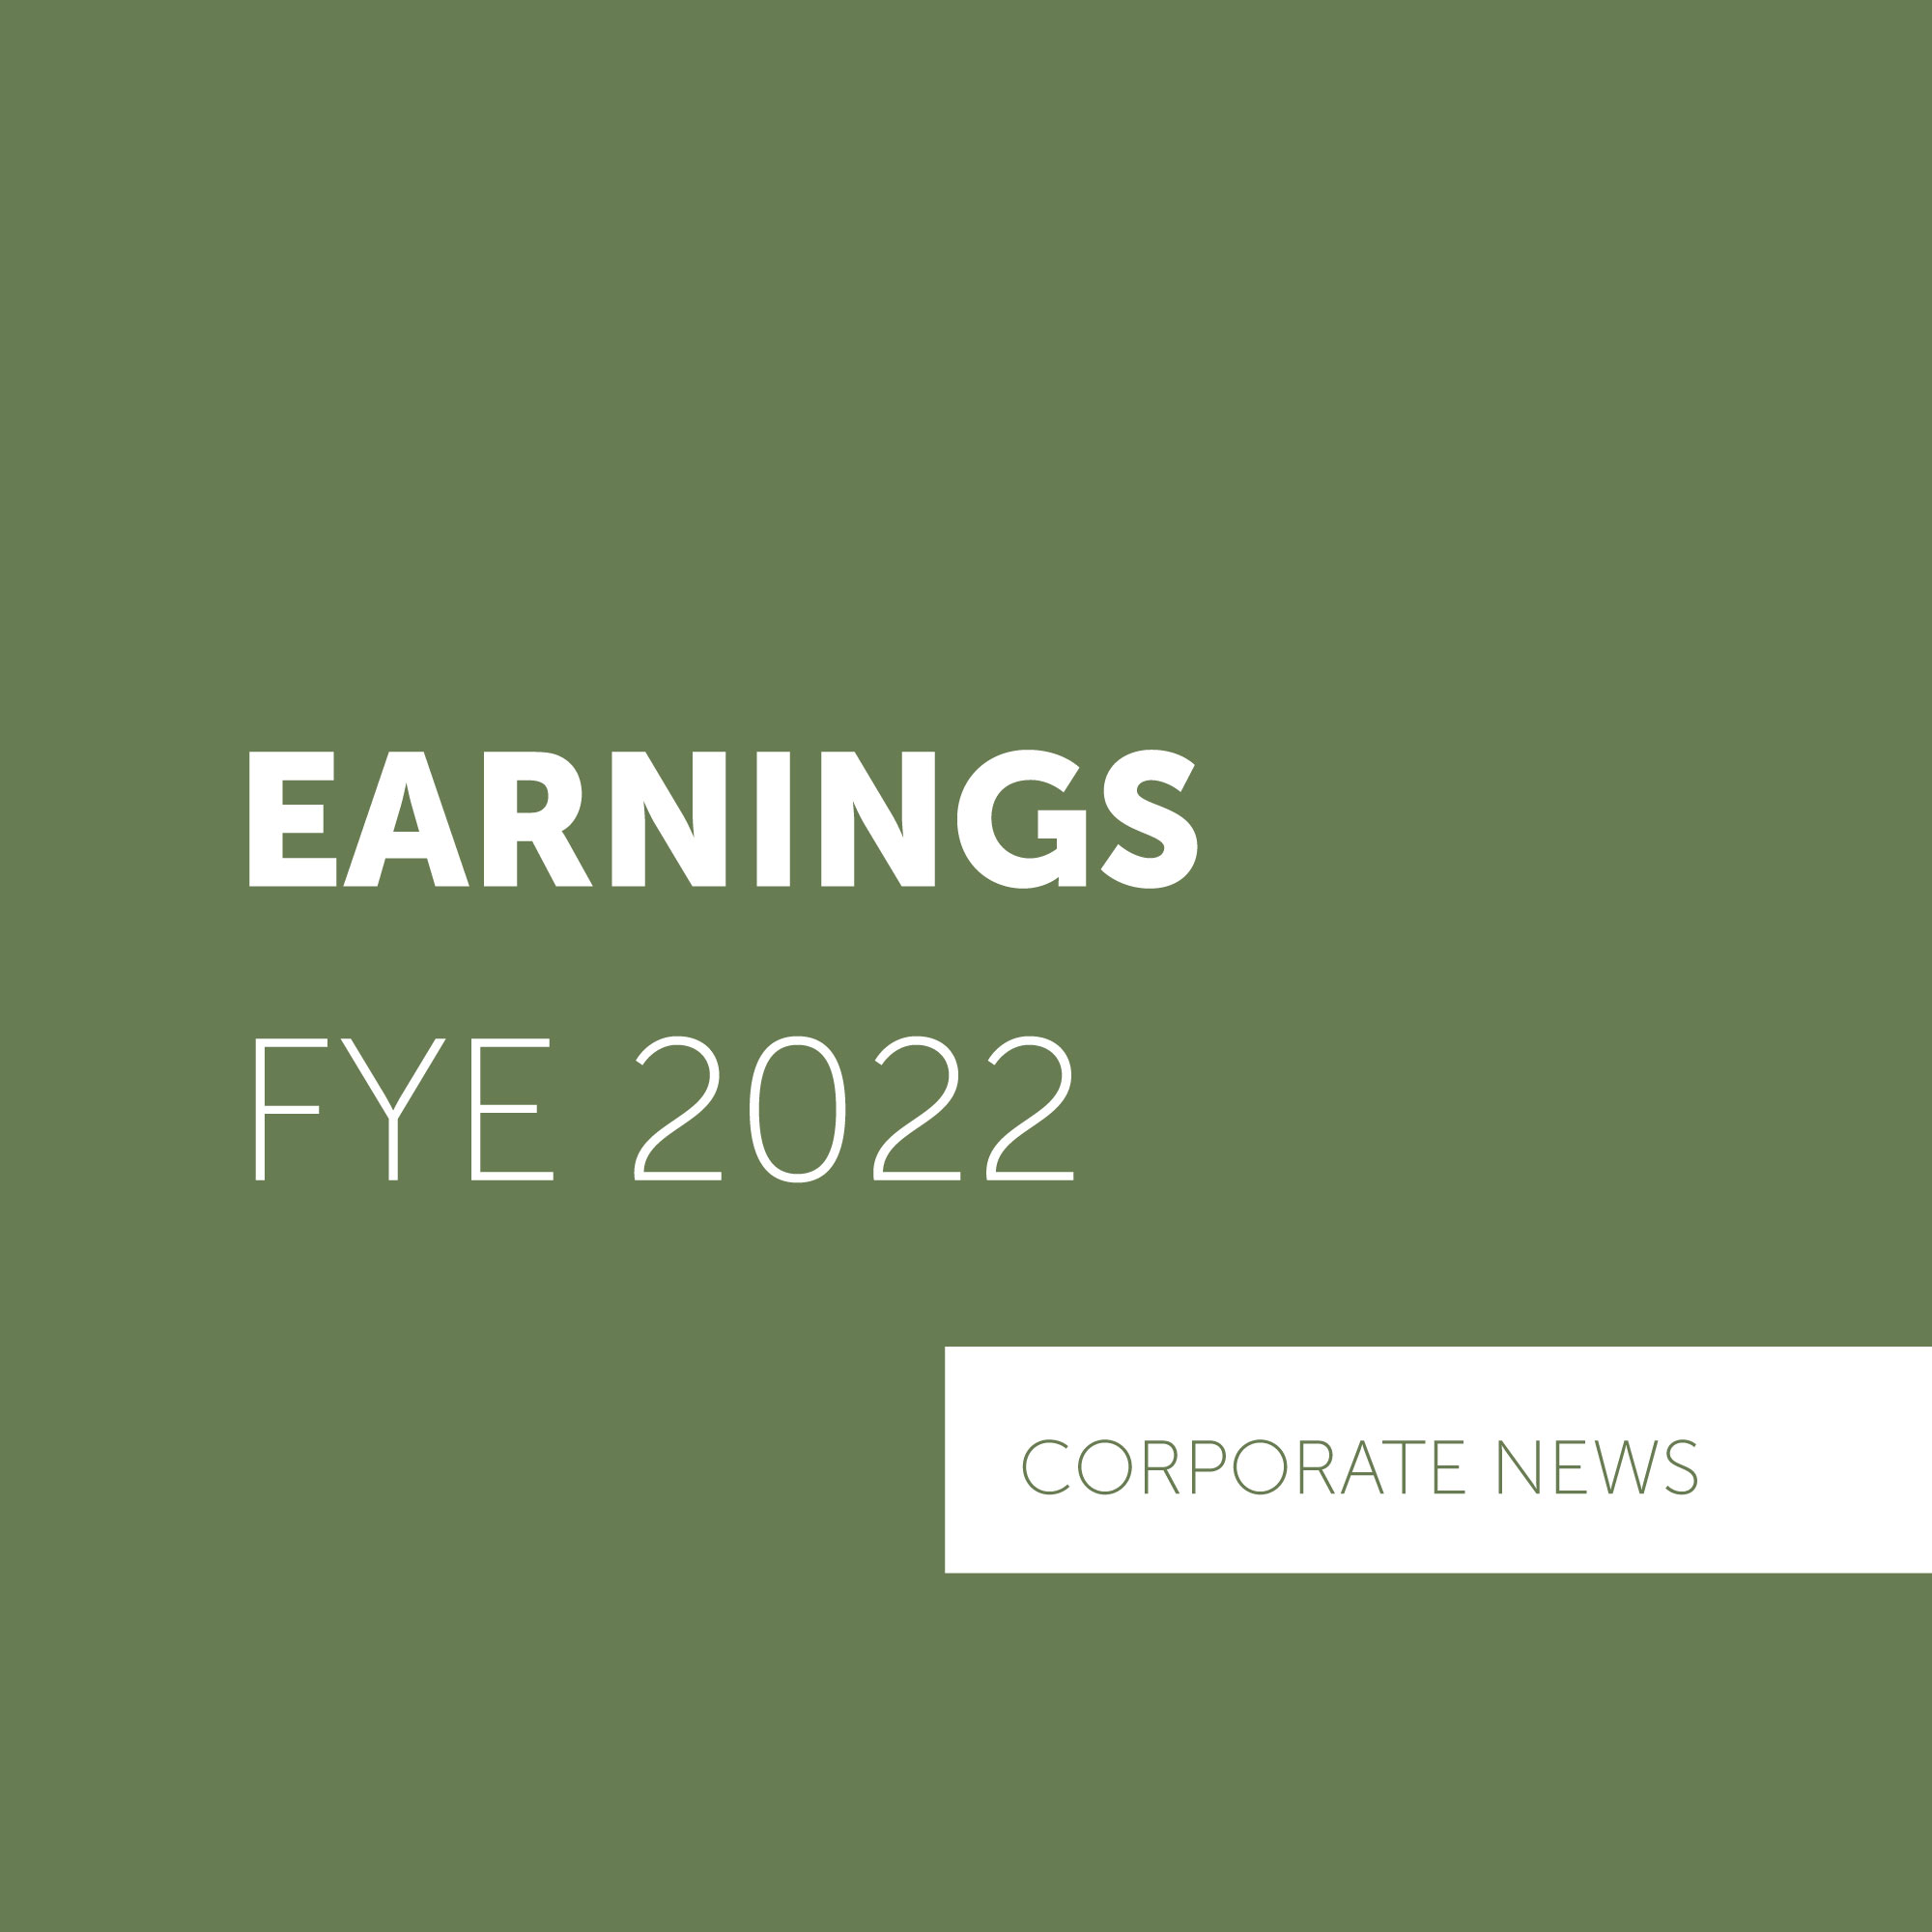 RAK Ceramics Announces FY 2022 Financial results